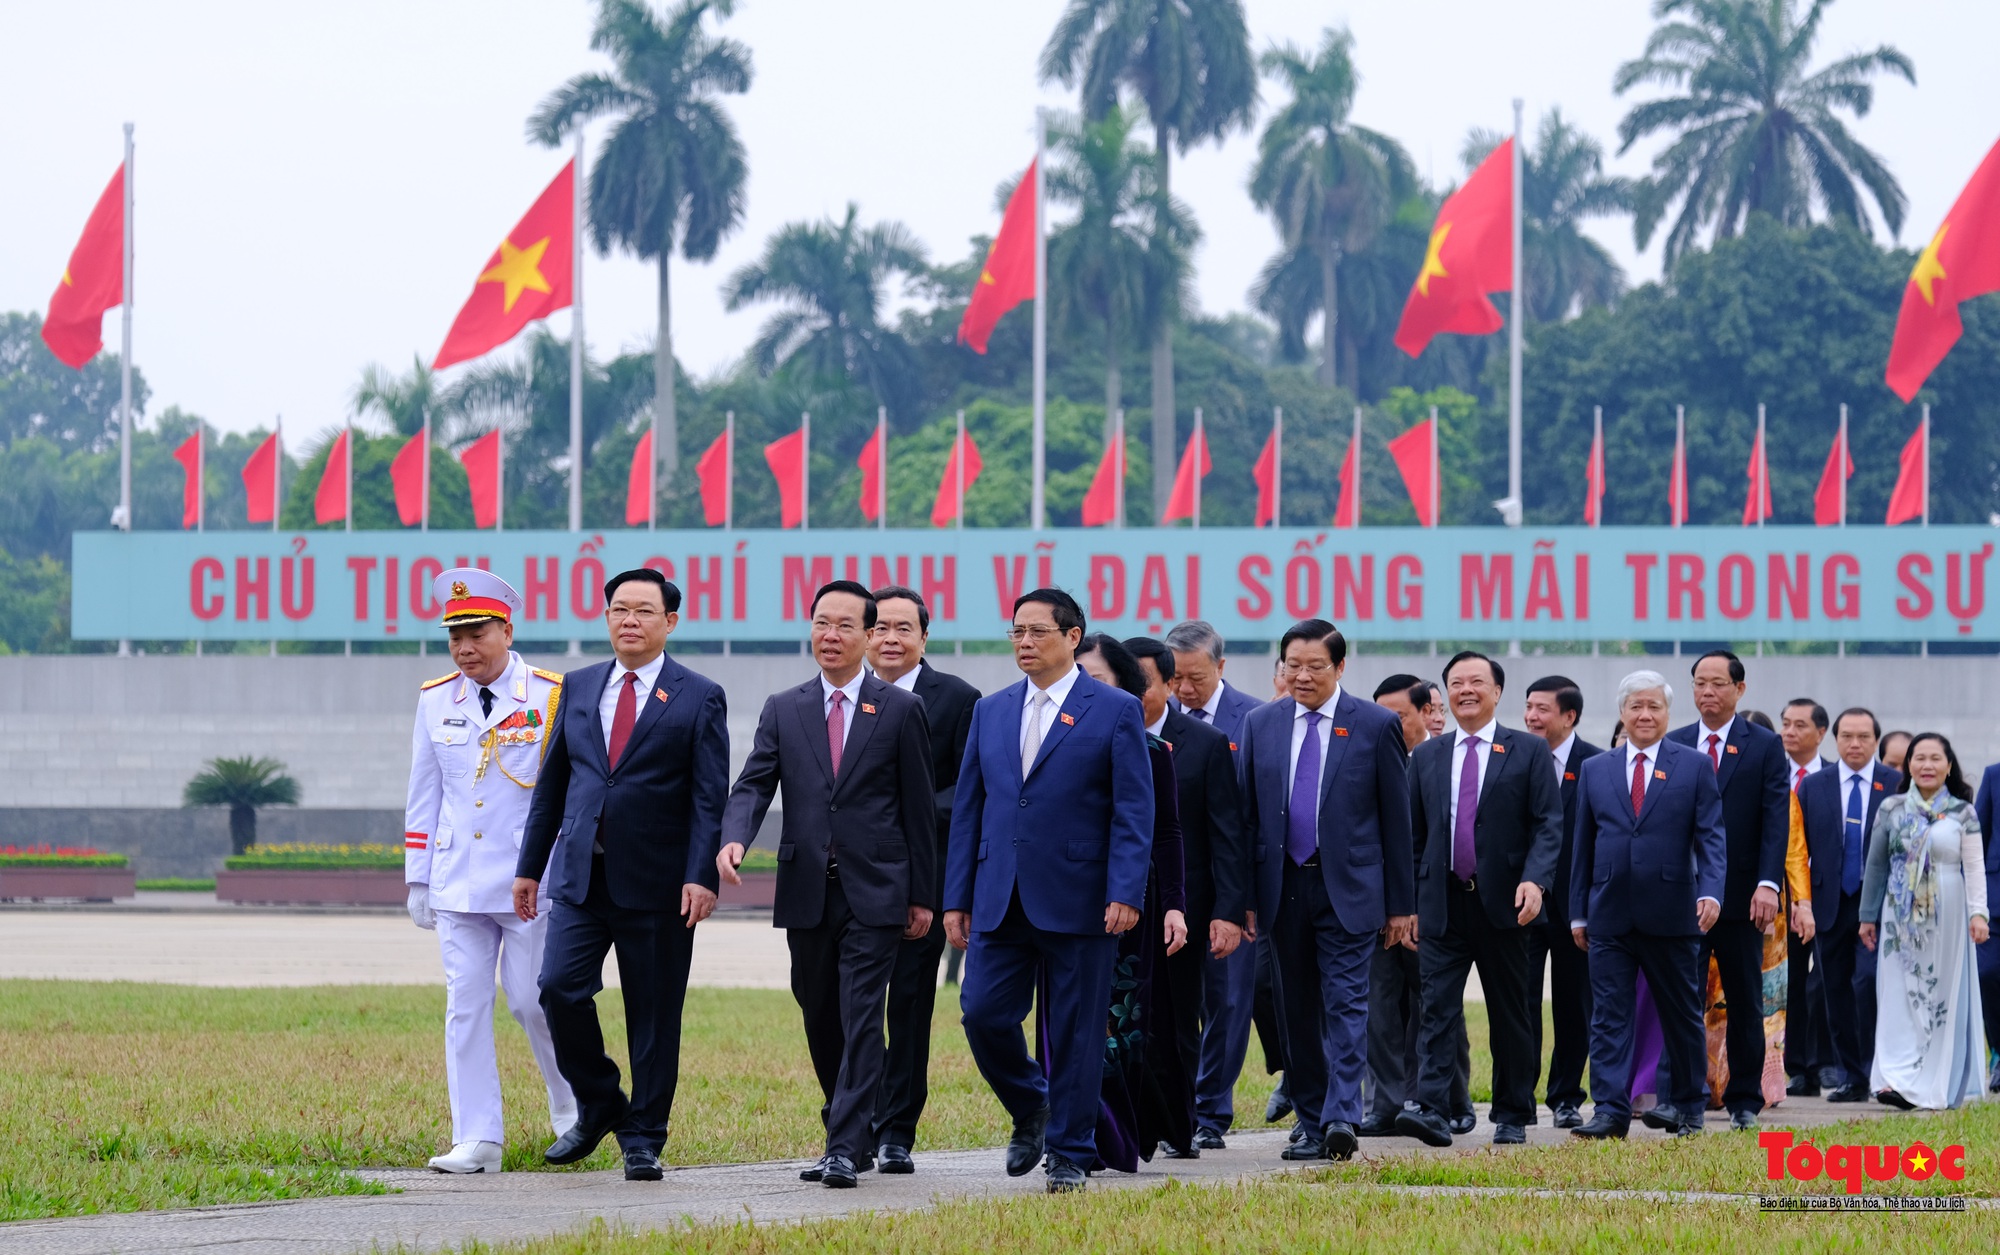 Lãnh đạo Đảng, Nhà nước và đại biểu Quốc hội viếng Chủ tịch Hồ Chí Minh trước khai mạc Kỳ 6 Quốc hội khóa XV - Ảnh 8.